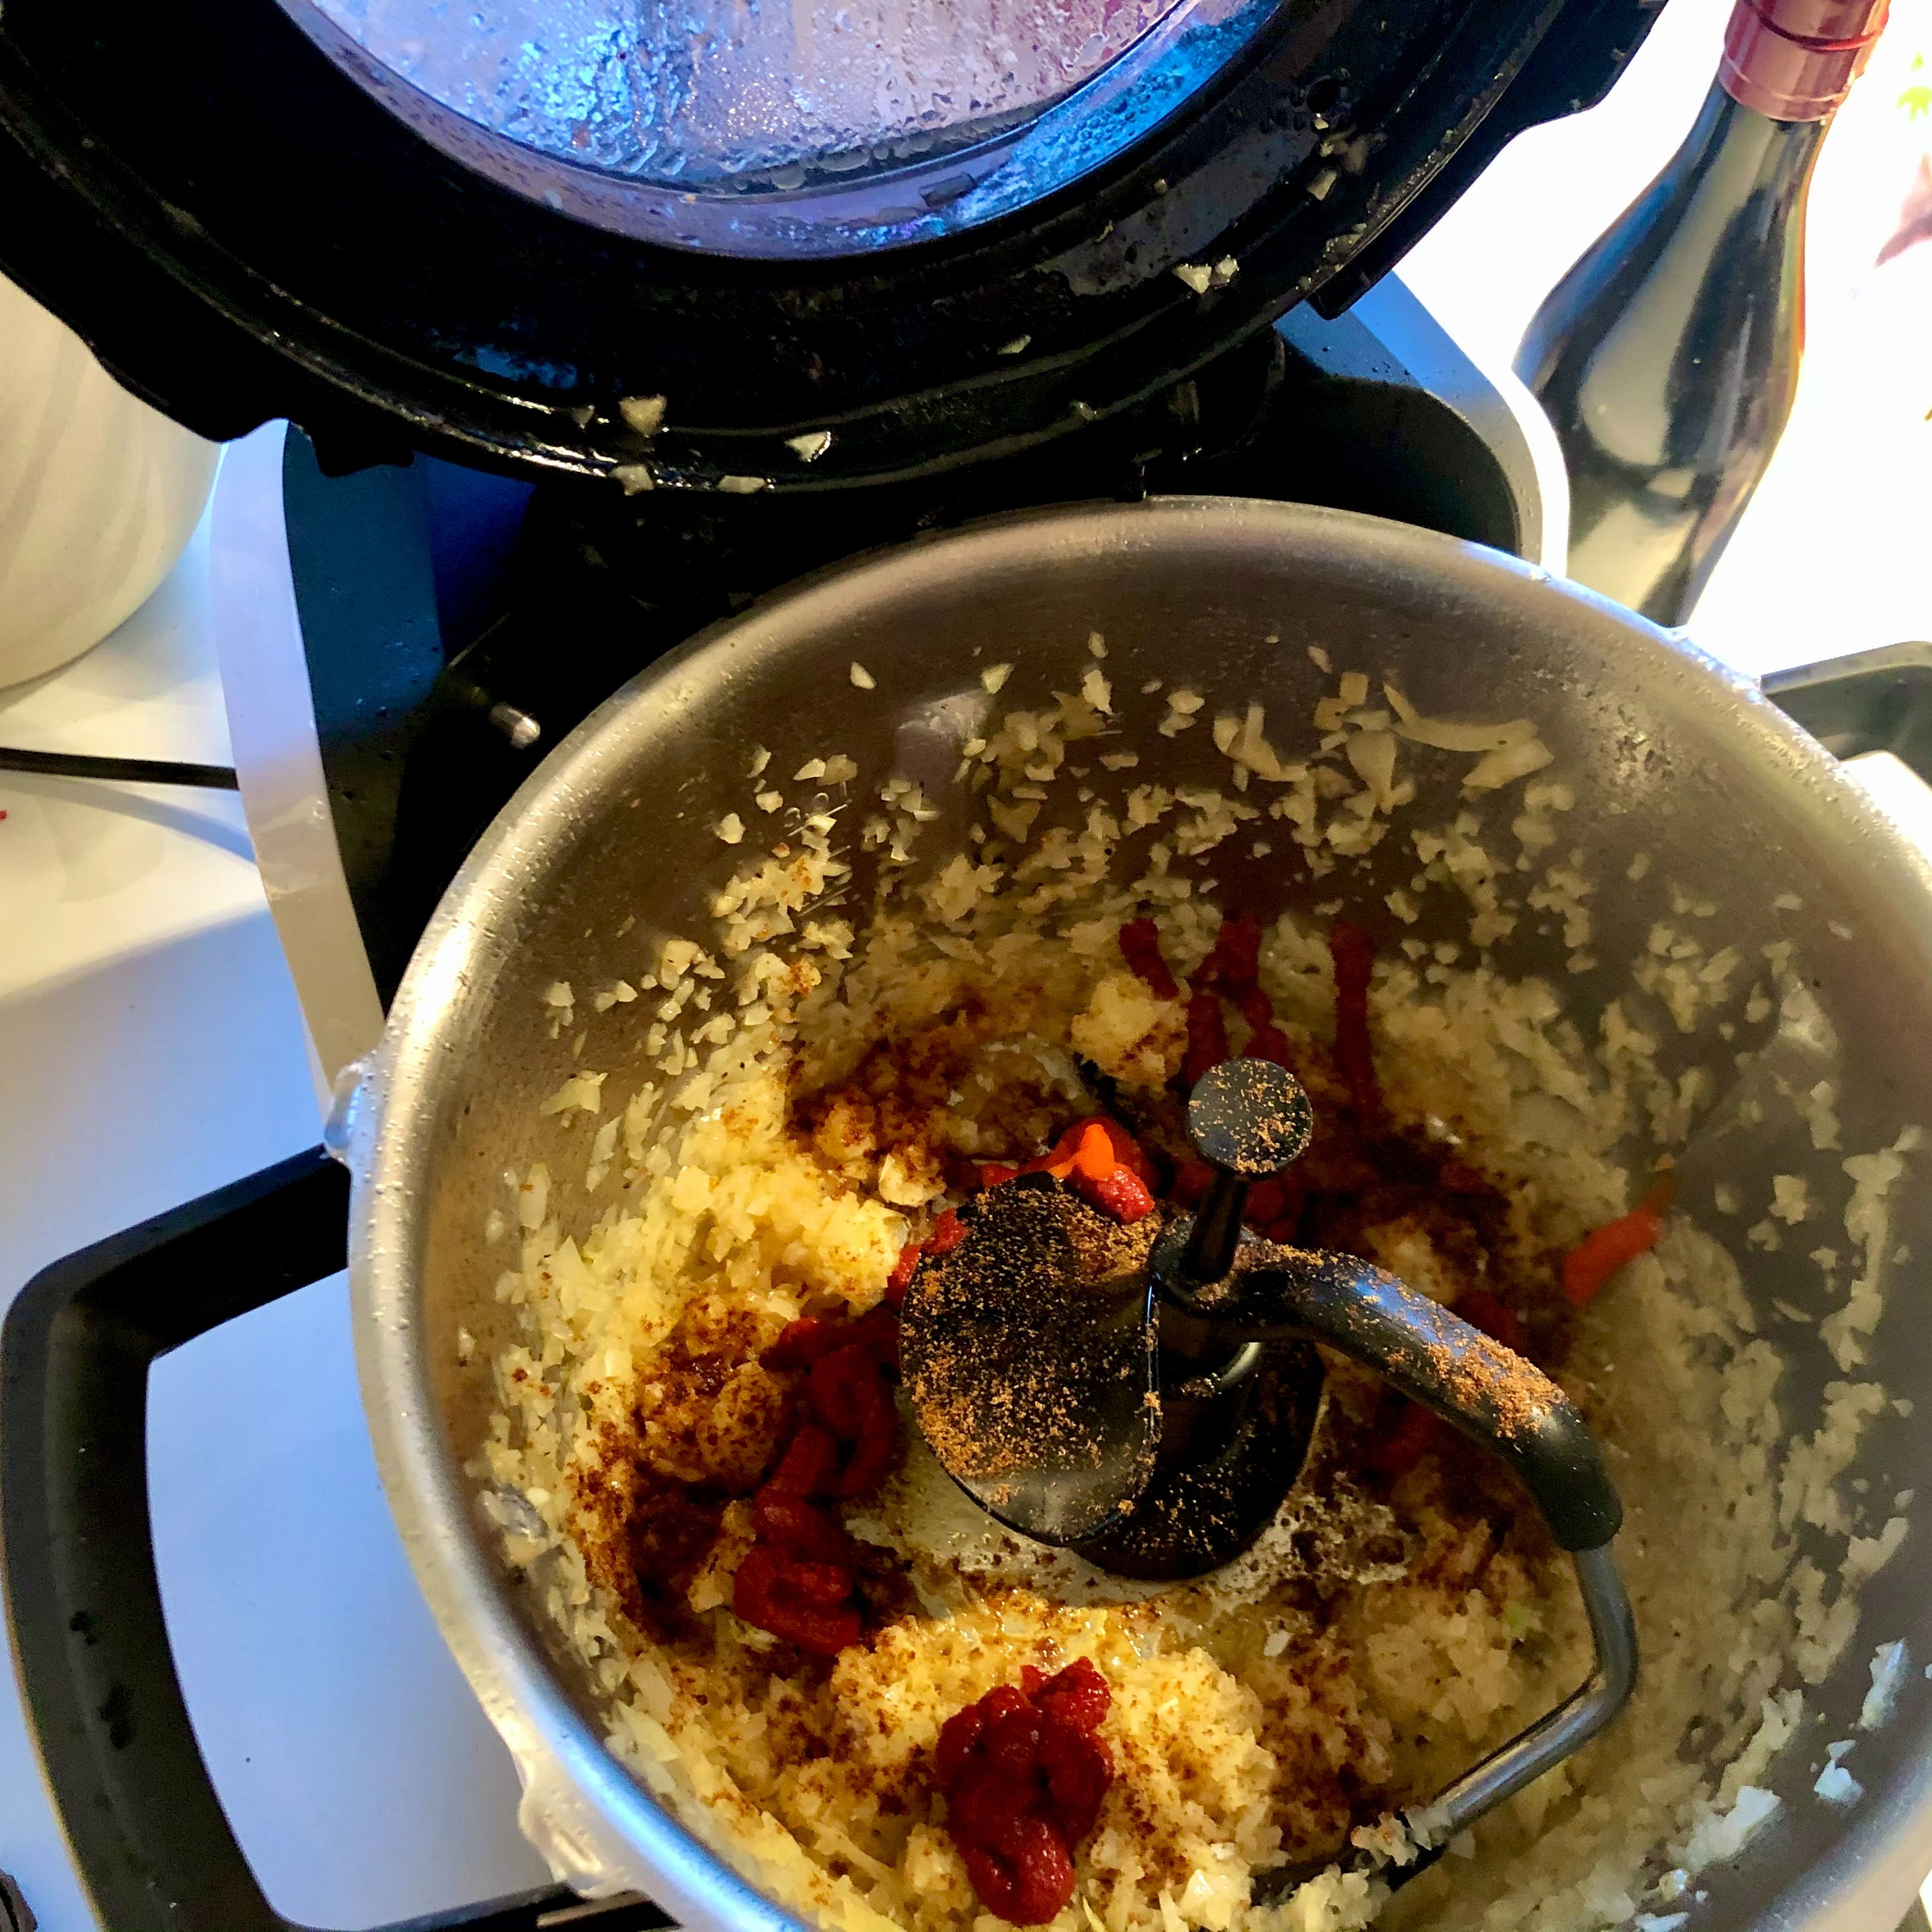 3D-Rührer einsetzen, restlichen Butterschmalz zugeben. Zwiebeln bei geschlossenem Deckel, ohne Messbecher, glasig braten (3D-Rührer | Stufe 3 | 150°C | 3 Min.). Pausieren, Deckel öffnen, Paprikapulver und Tomatenmark zugeben. Schließen und Braten fortsetzen, bis es deutlich zischelt. Dann über die Deckelöffnung Rotwein zugeben, auf gleicher Stufe einkochen lassen (3D-Rührer | Stufe 3 | 100°C | 2 Min.). Passierte Tomaten zugeben, Deckel ohne Messbecher schließen und weiterhin kochen lassen (3D-Rührer | Stufe 3 | 100°C | 5 Min.).